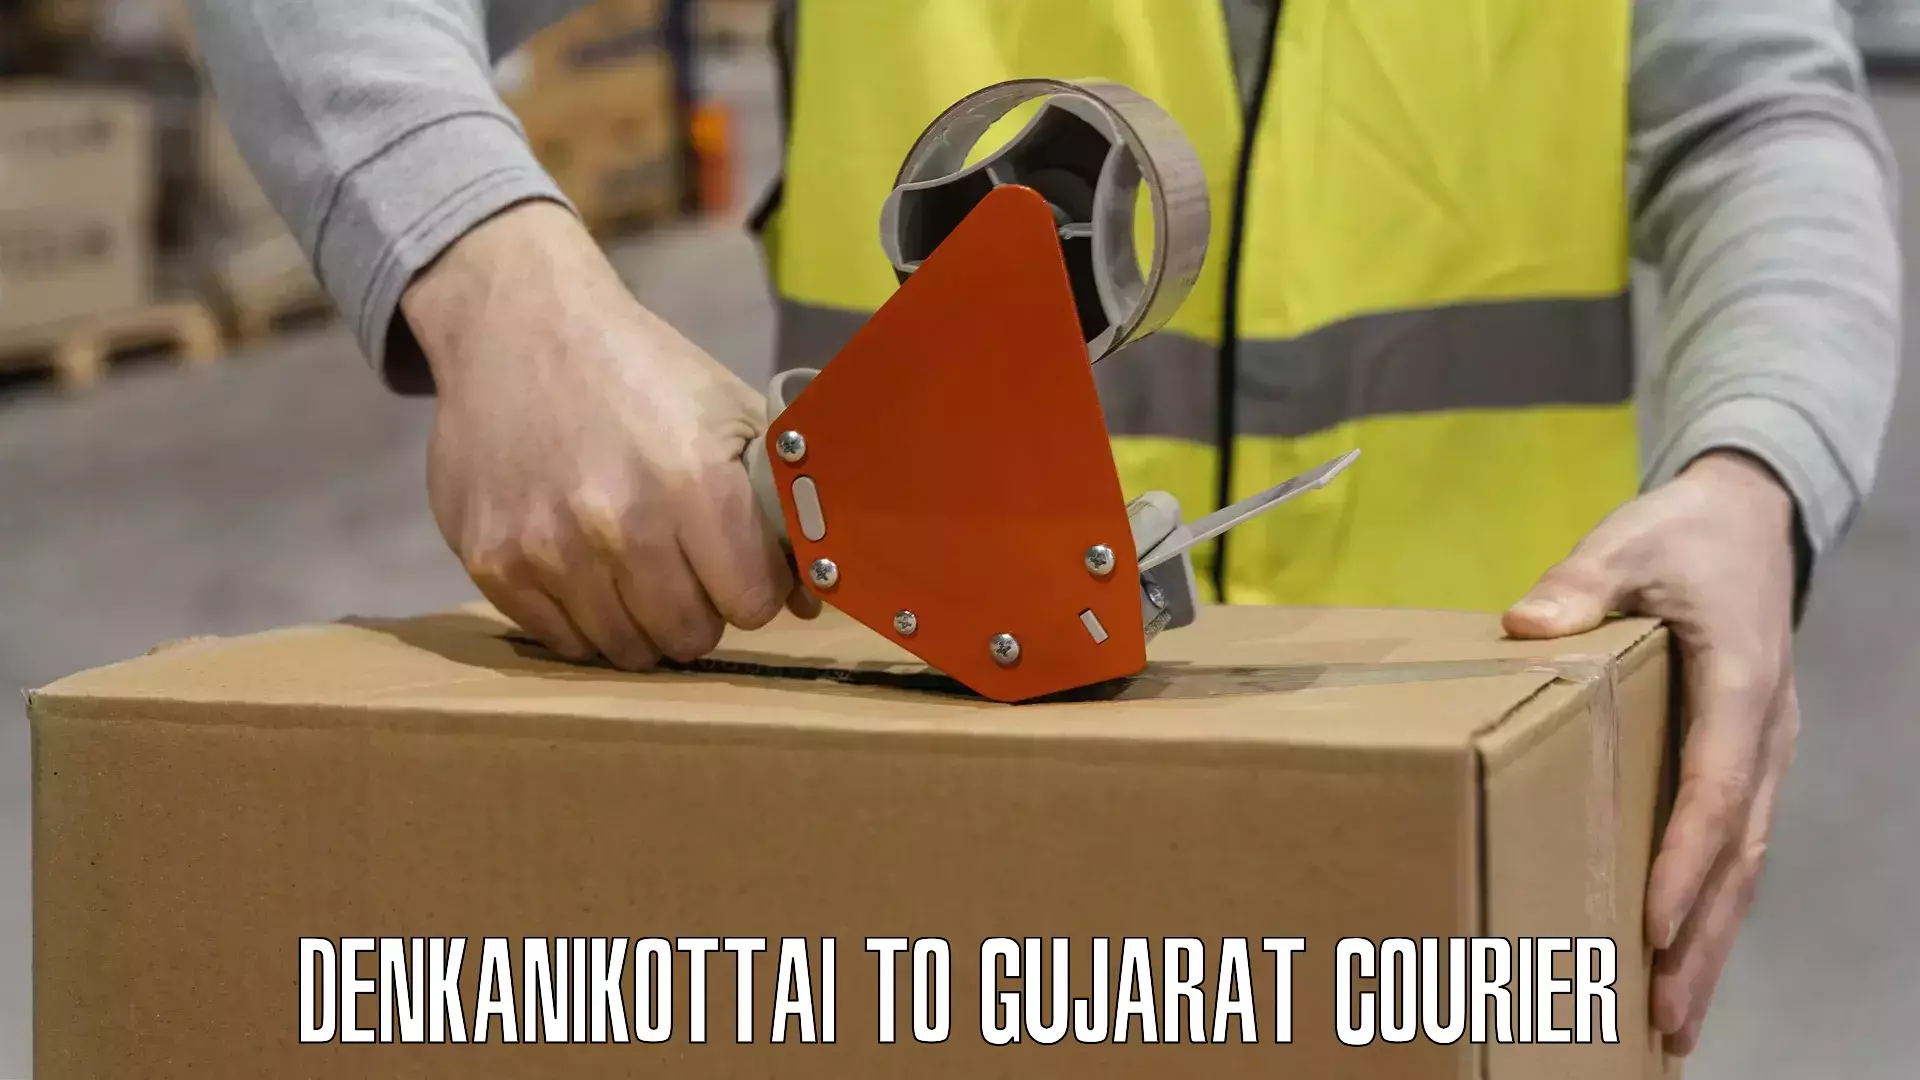 Secure packaging Denkanikottai to Gujarat